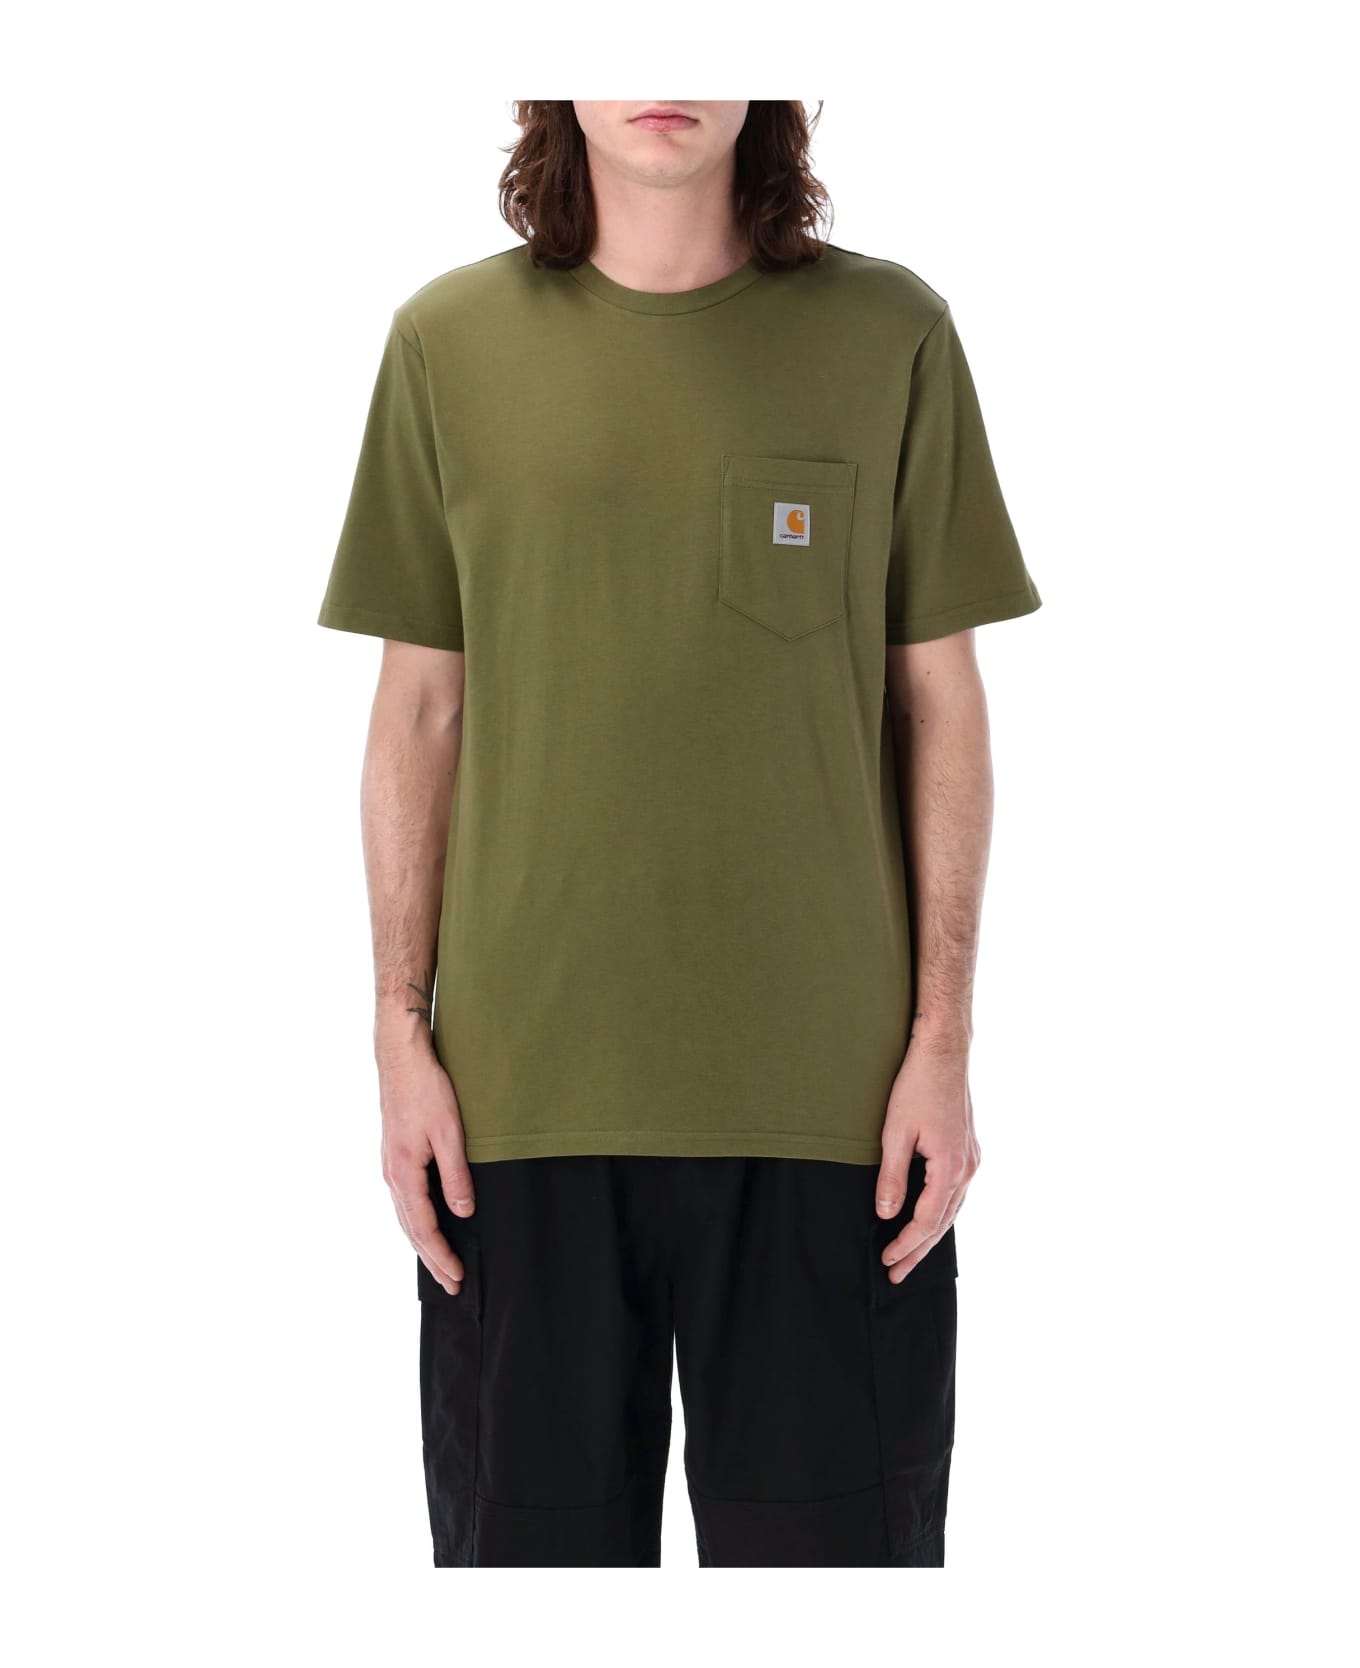 Carhartt Pocket T-shirt - DUNDEE シャツ